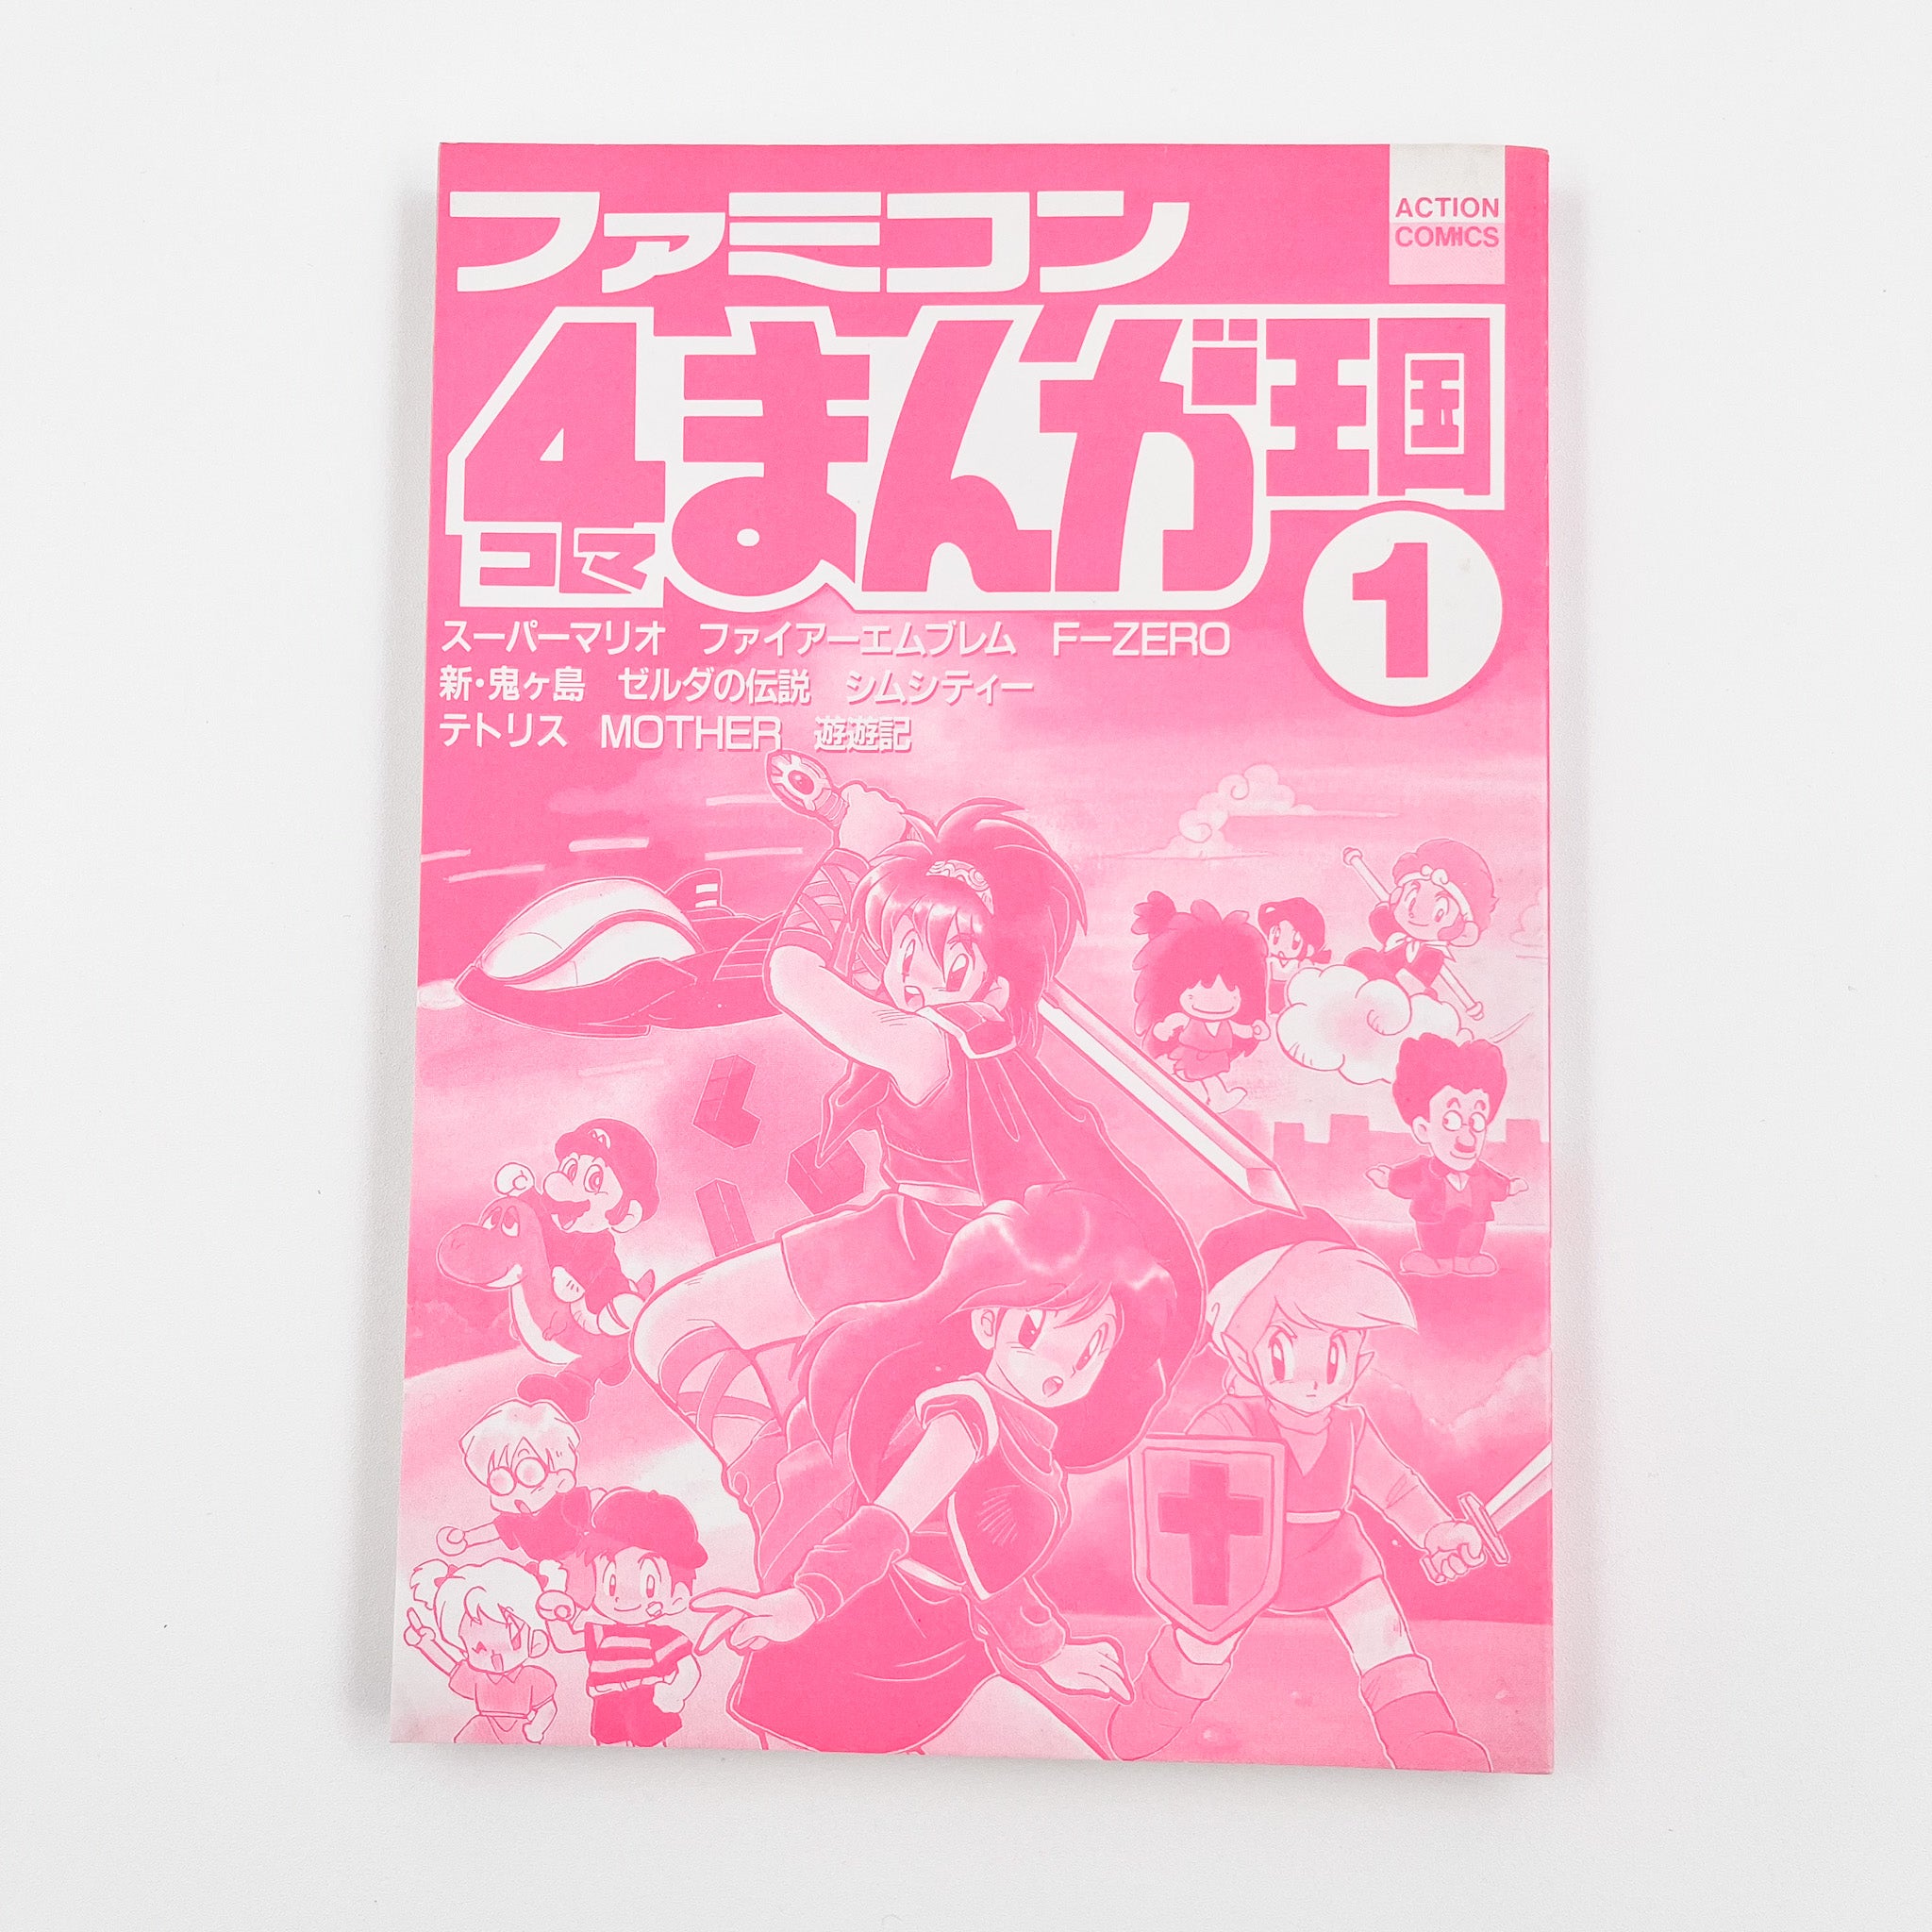 Famicom 4koma Manga Kingdom, Volume 1 (1991)